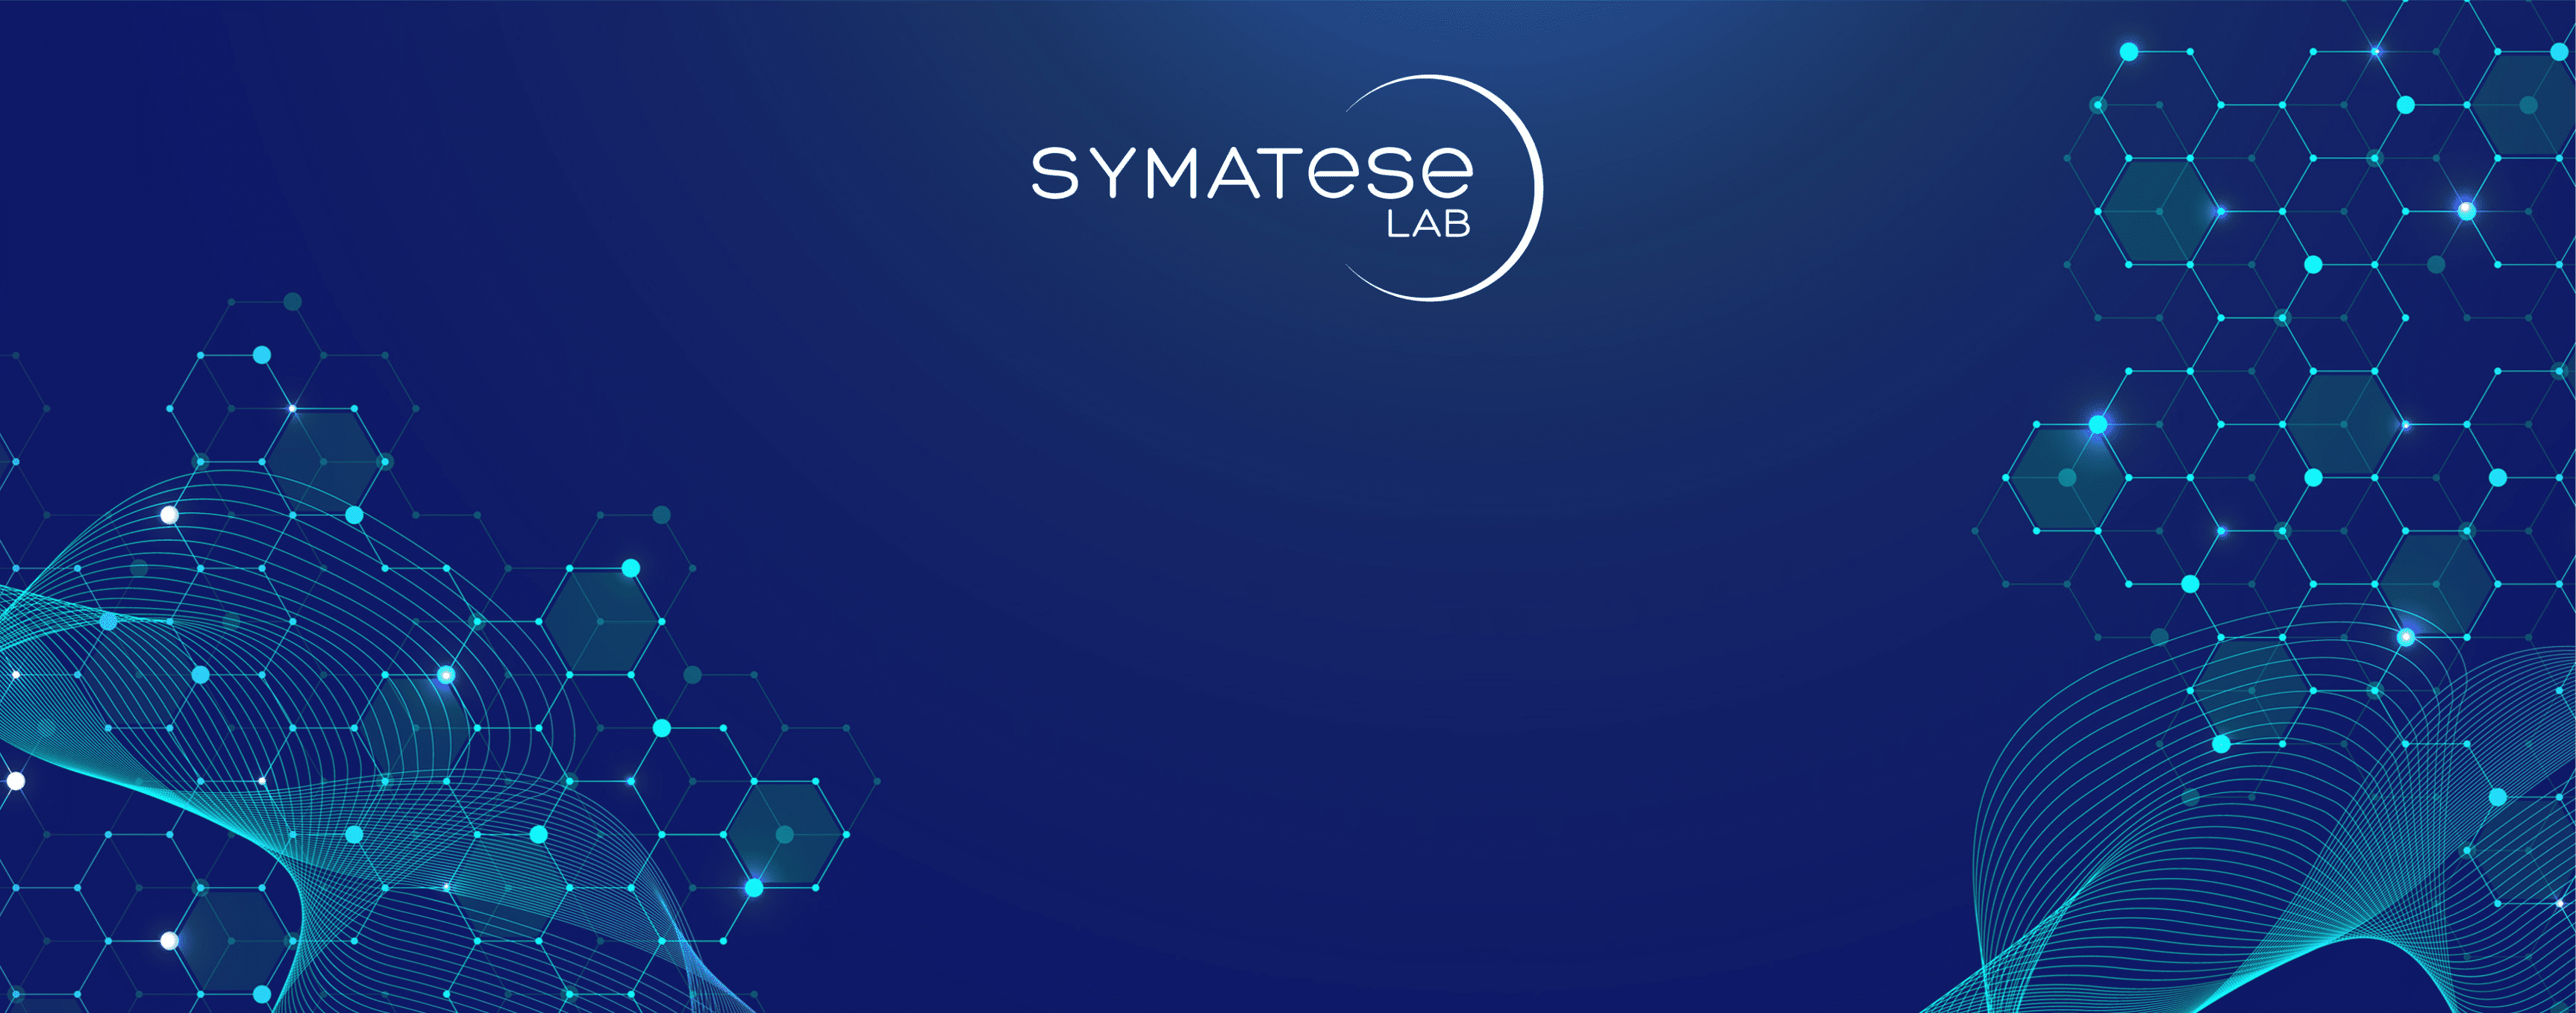 Symatese becomes Symatese Lab